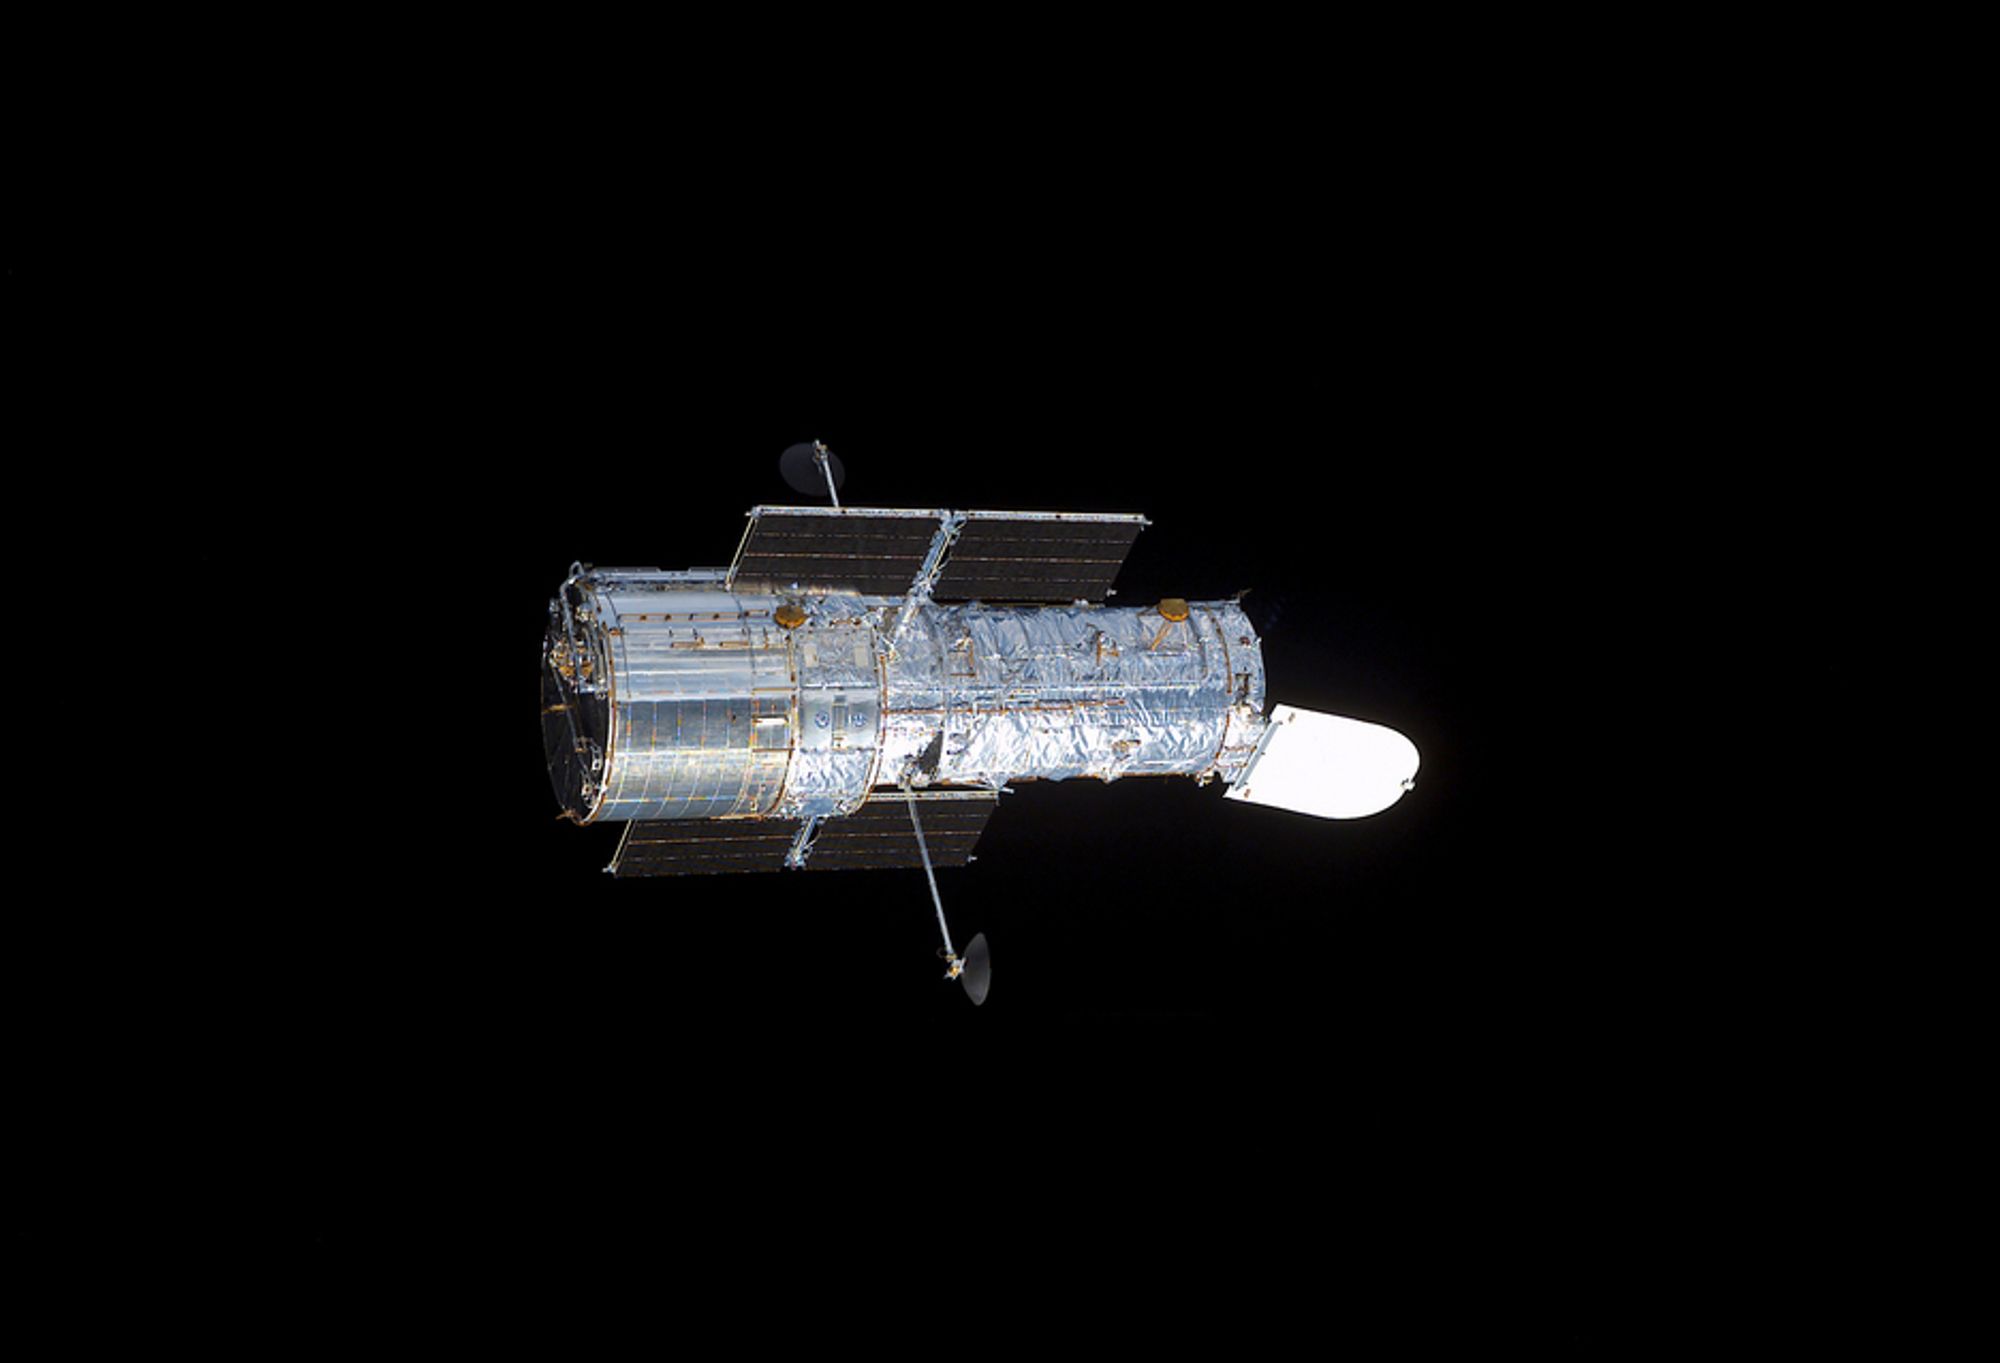 Romteleskop, Hubble